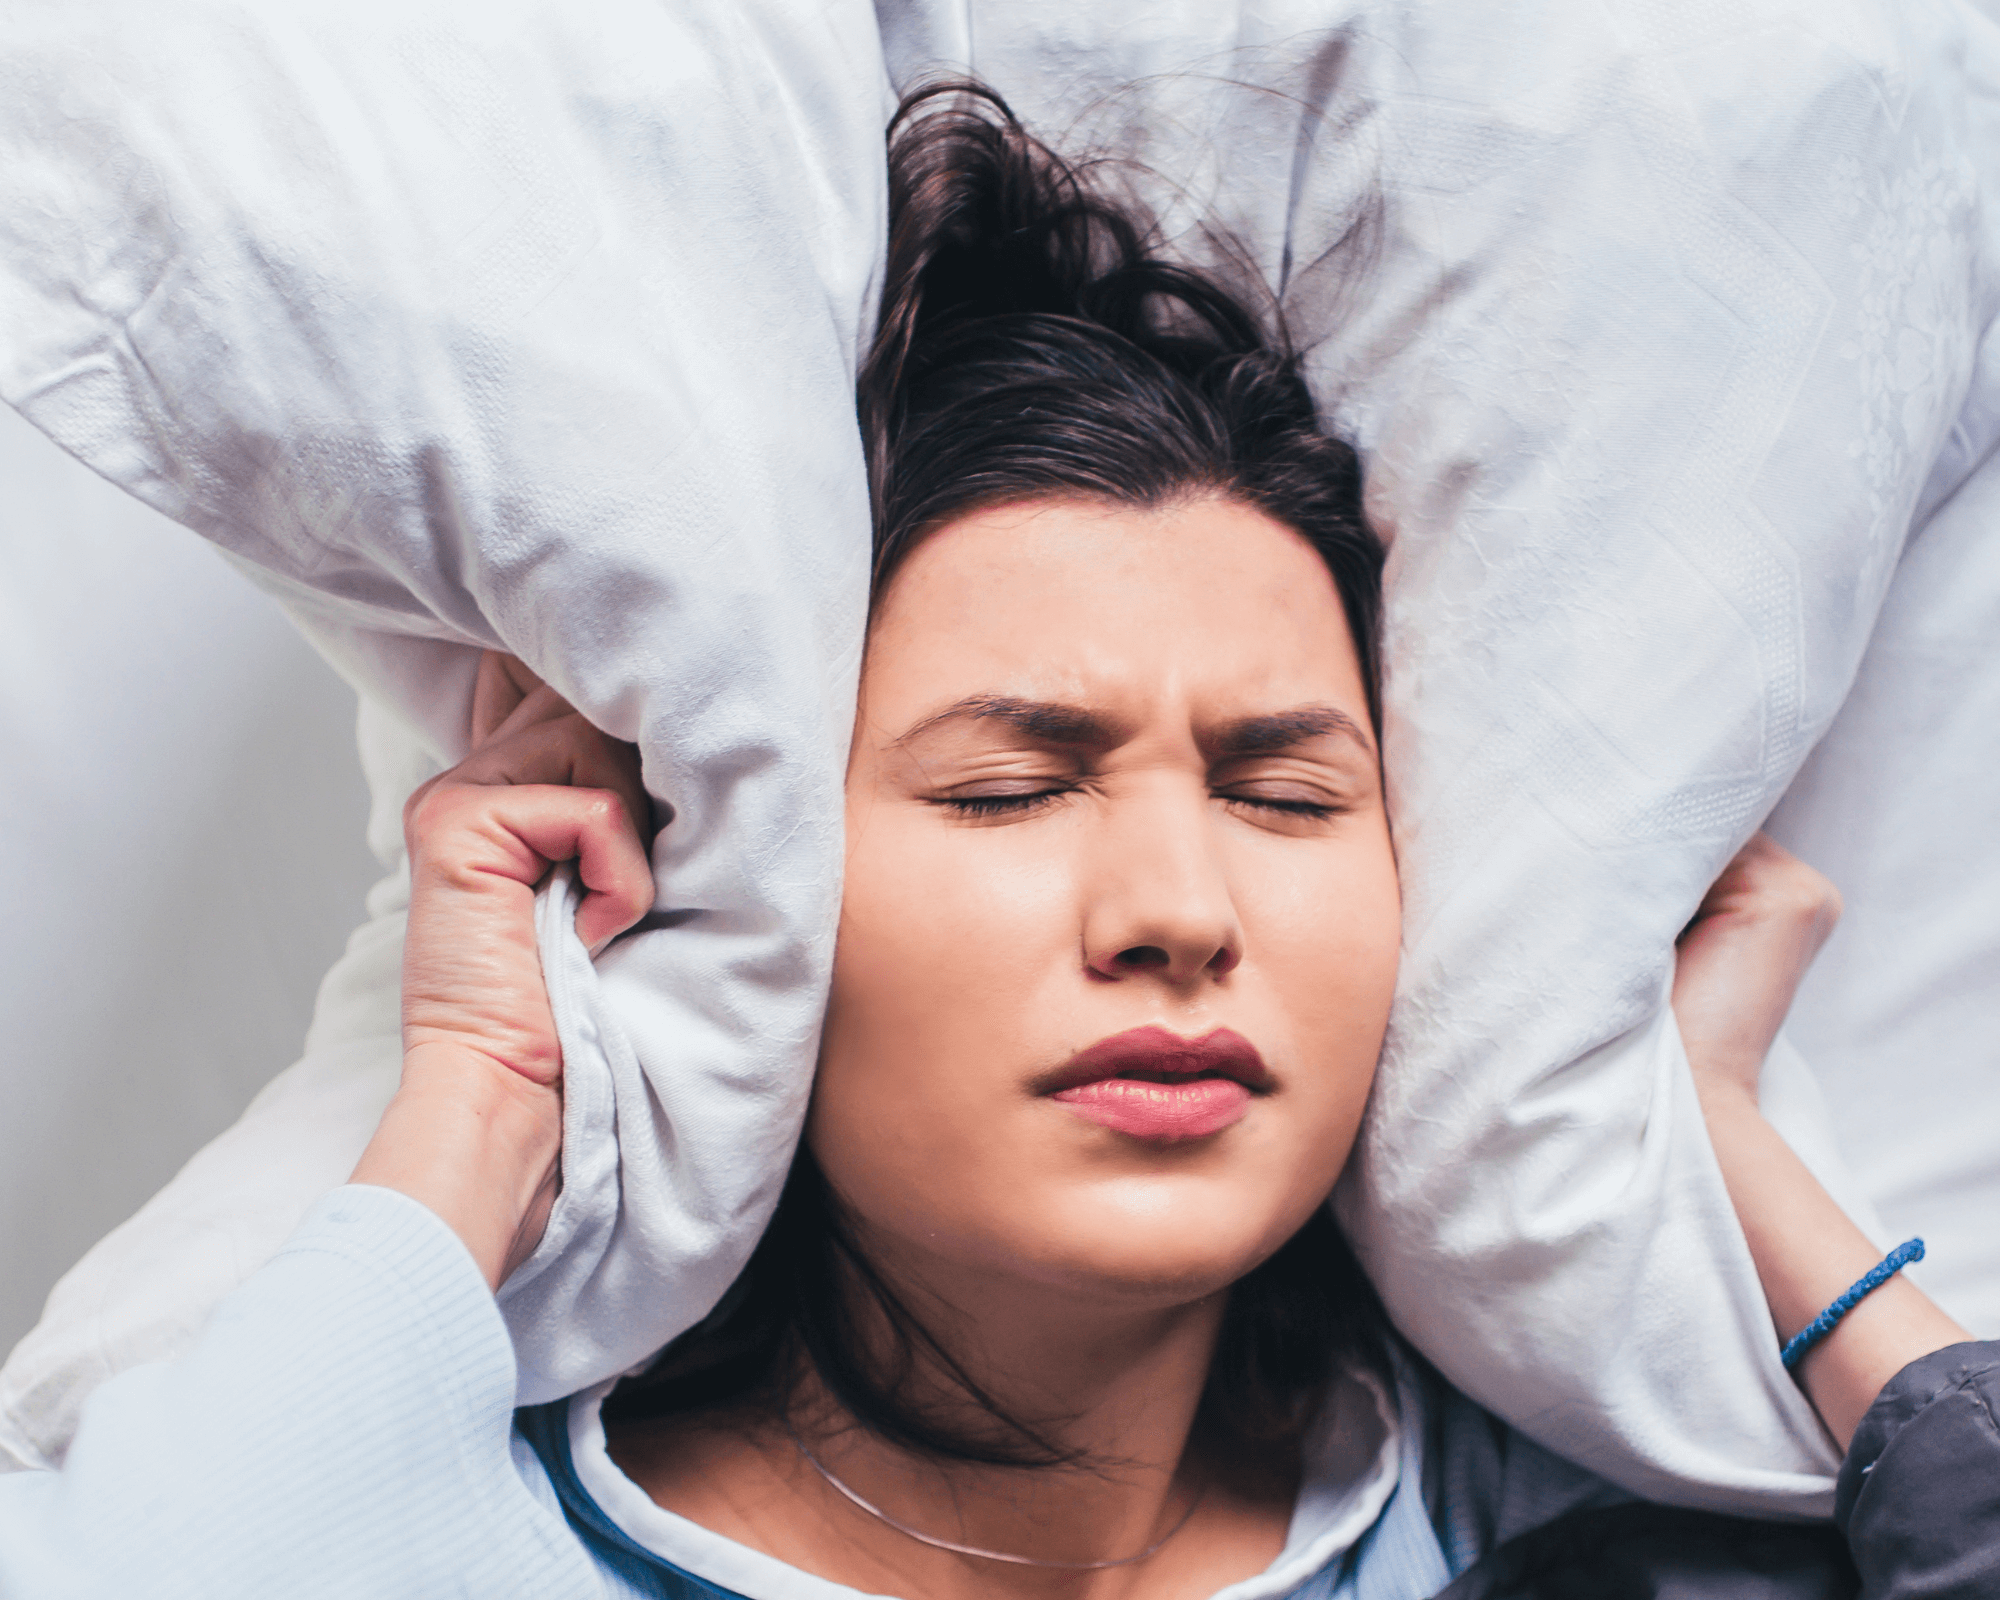 ปัญหาการนอนหลับ ภาวะวิตกกังวล ความเครียด สุขภาพใจ ความเครียด โควิด-19 - โรงพยาบาลกรุงเทพเชียงใหม่